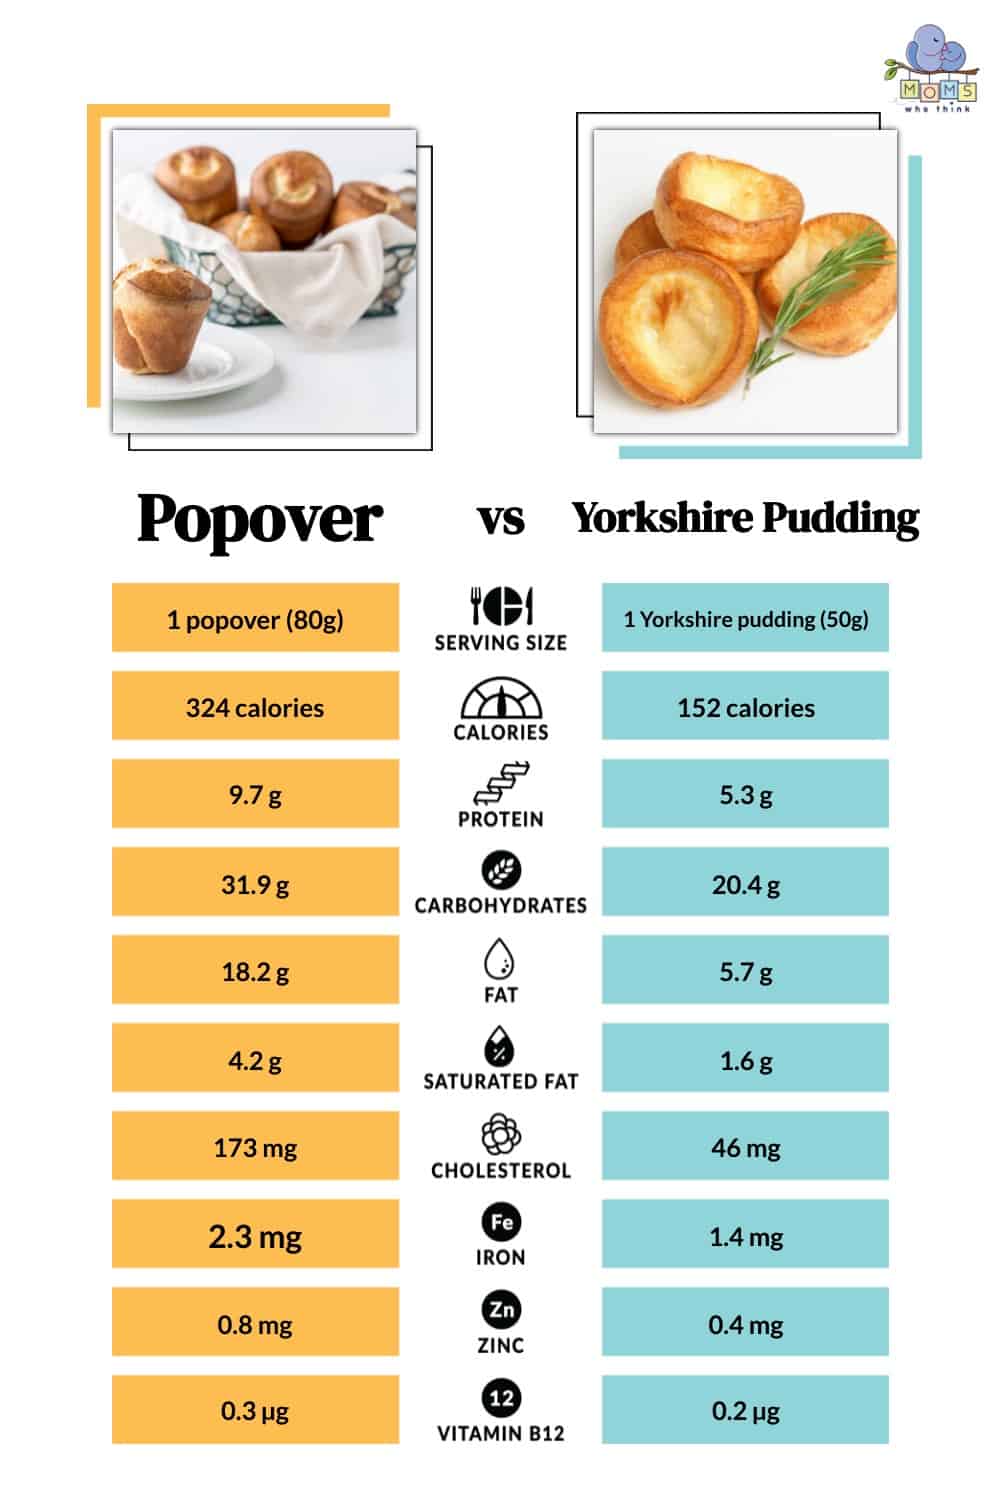 Popover vs Yorkshire Pudding Nutrition Comparison